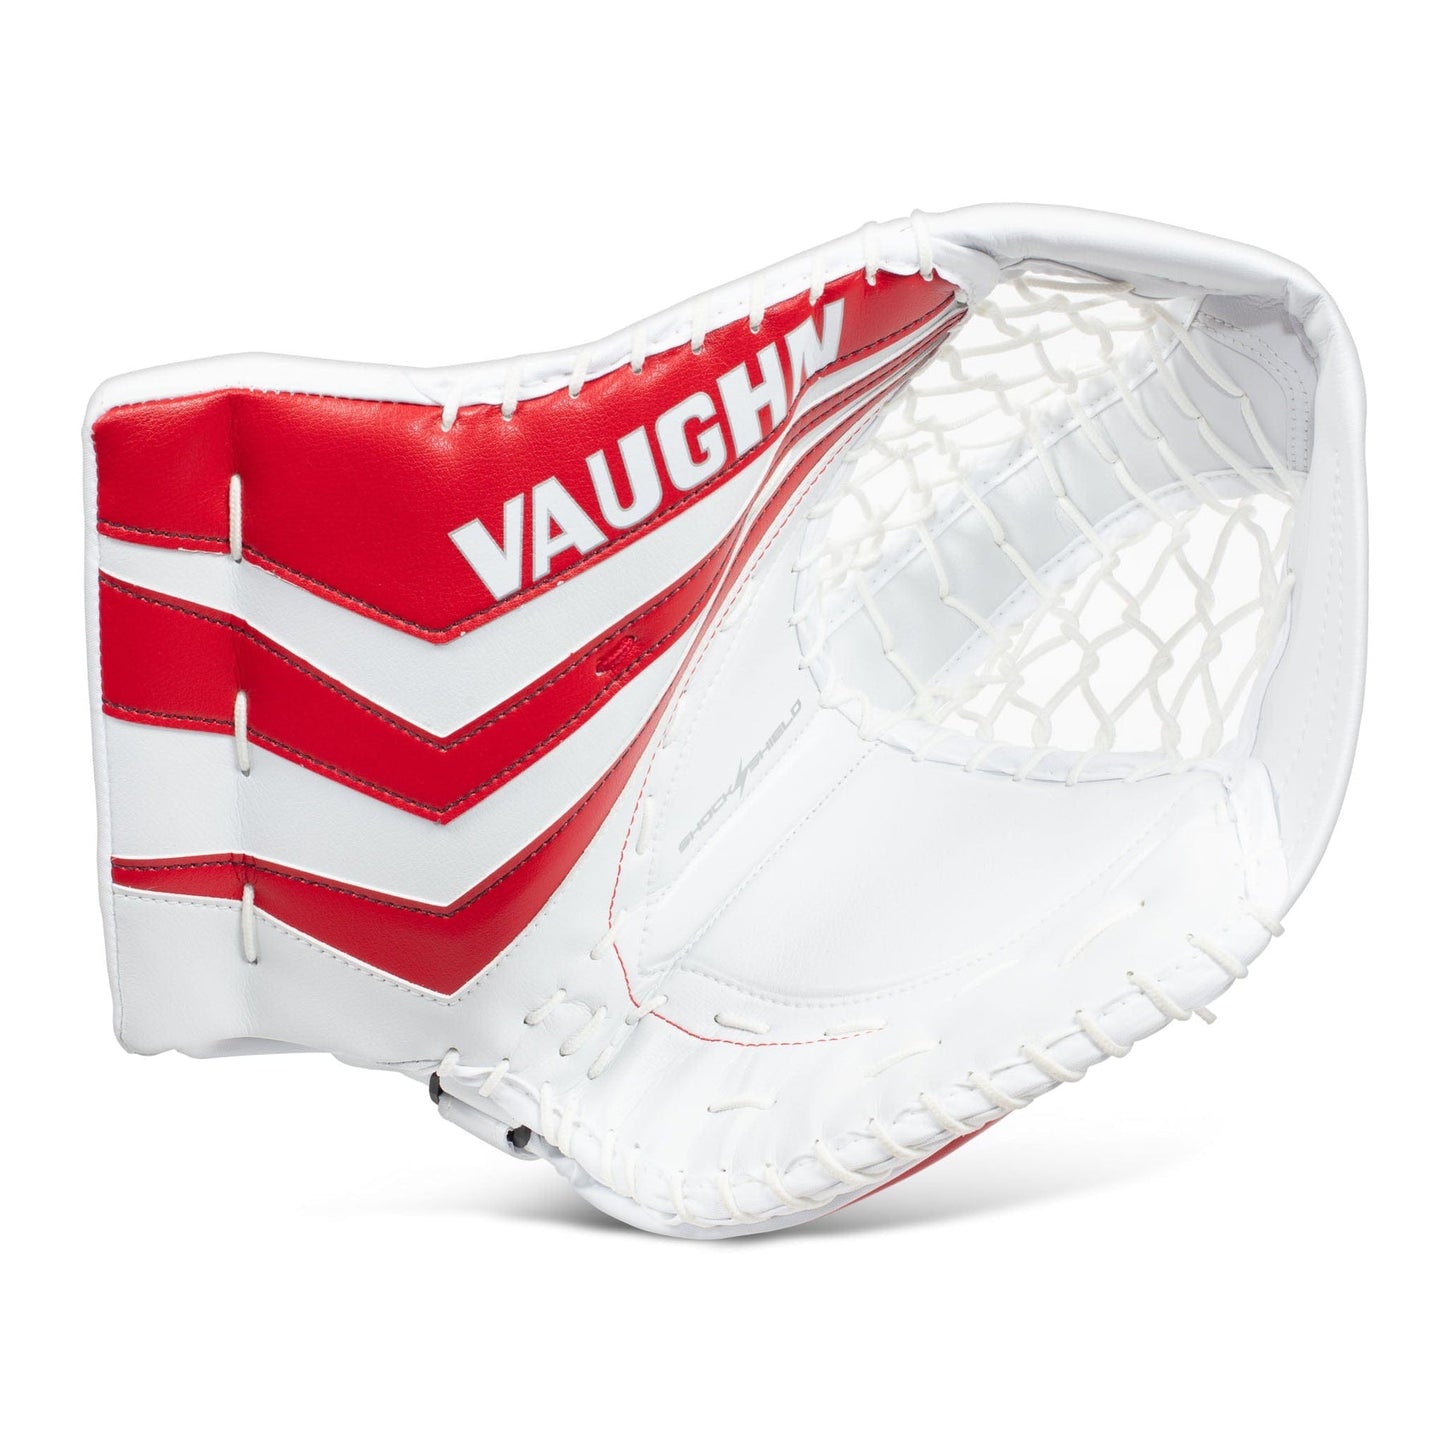 Vaughn Ventus SLR2 Pro Carbon Fanghand ST SR